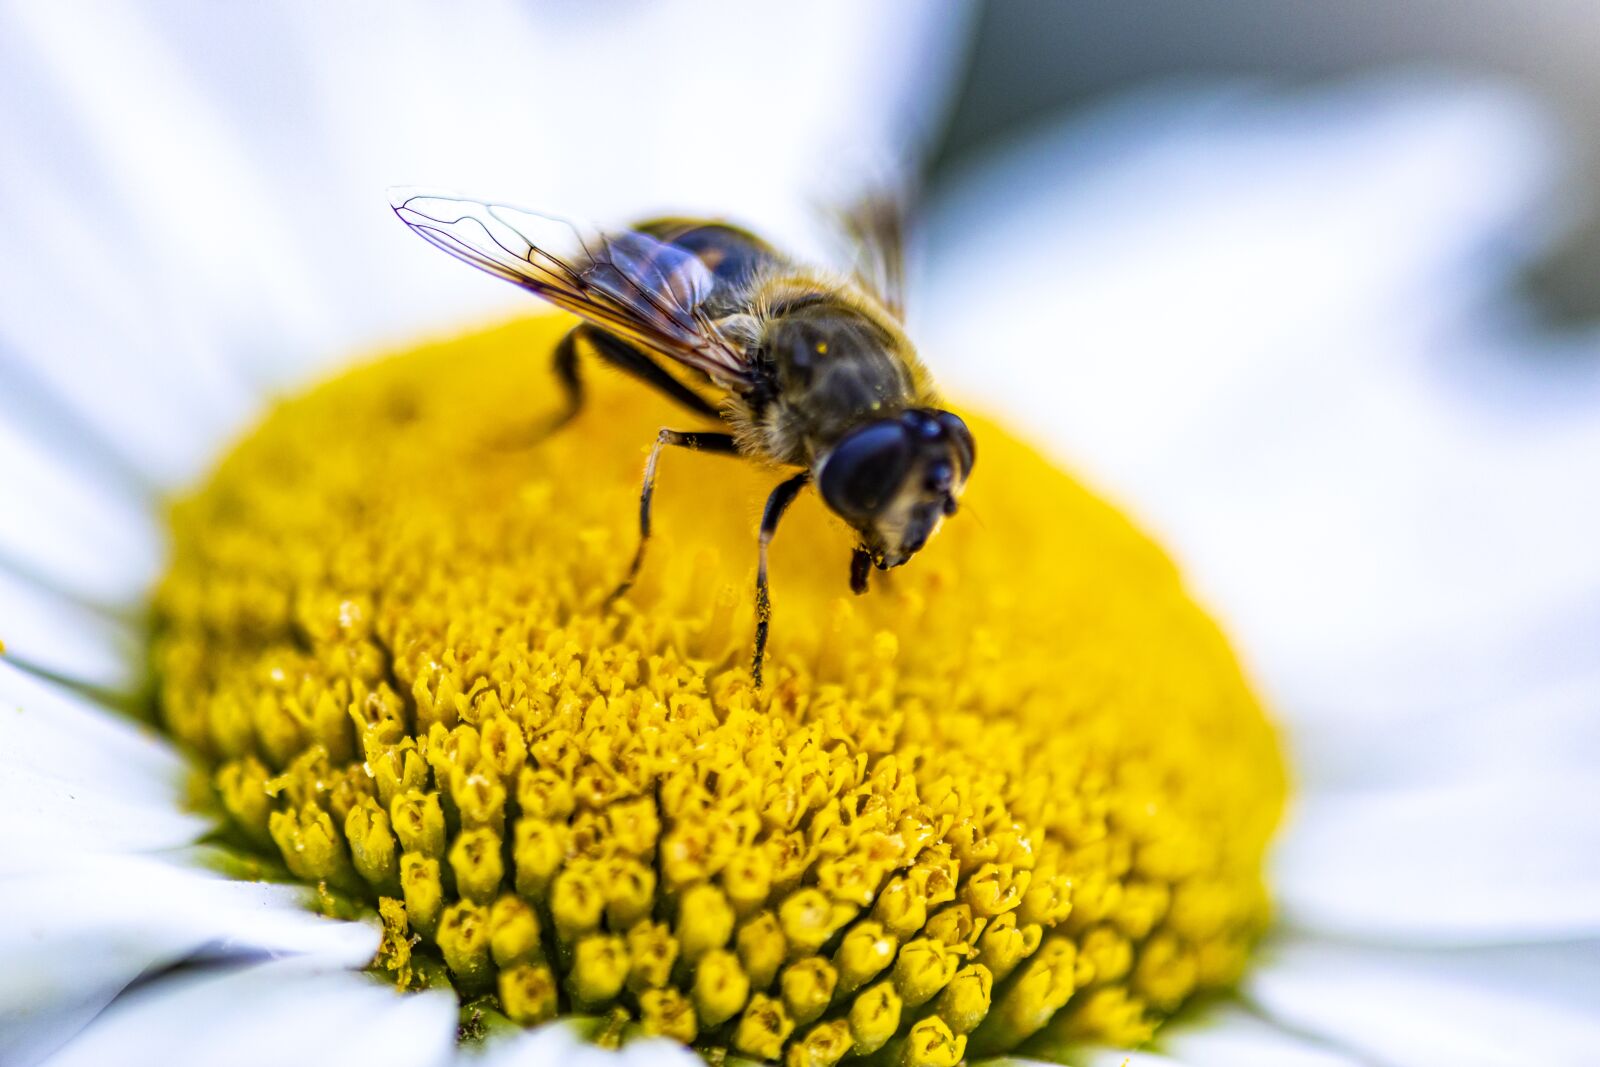 Canon EOS 5D Mark IV sample photo. Garden, flower, bee photography